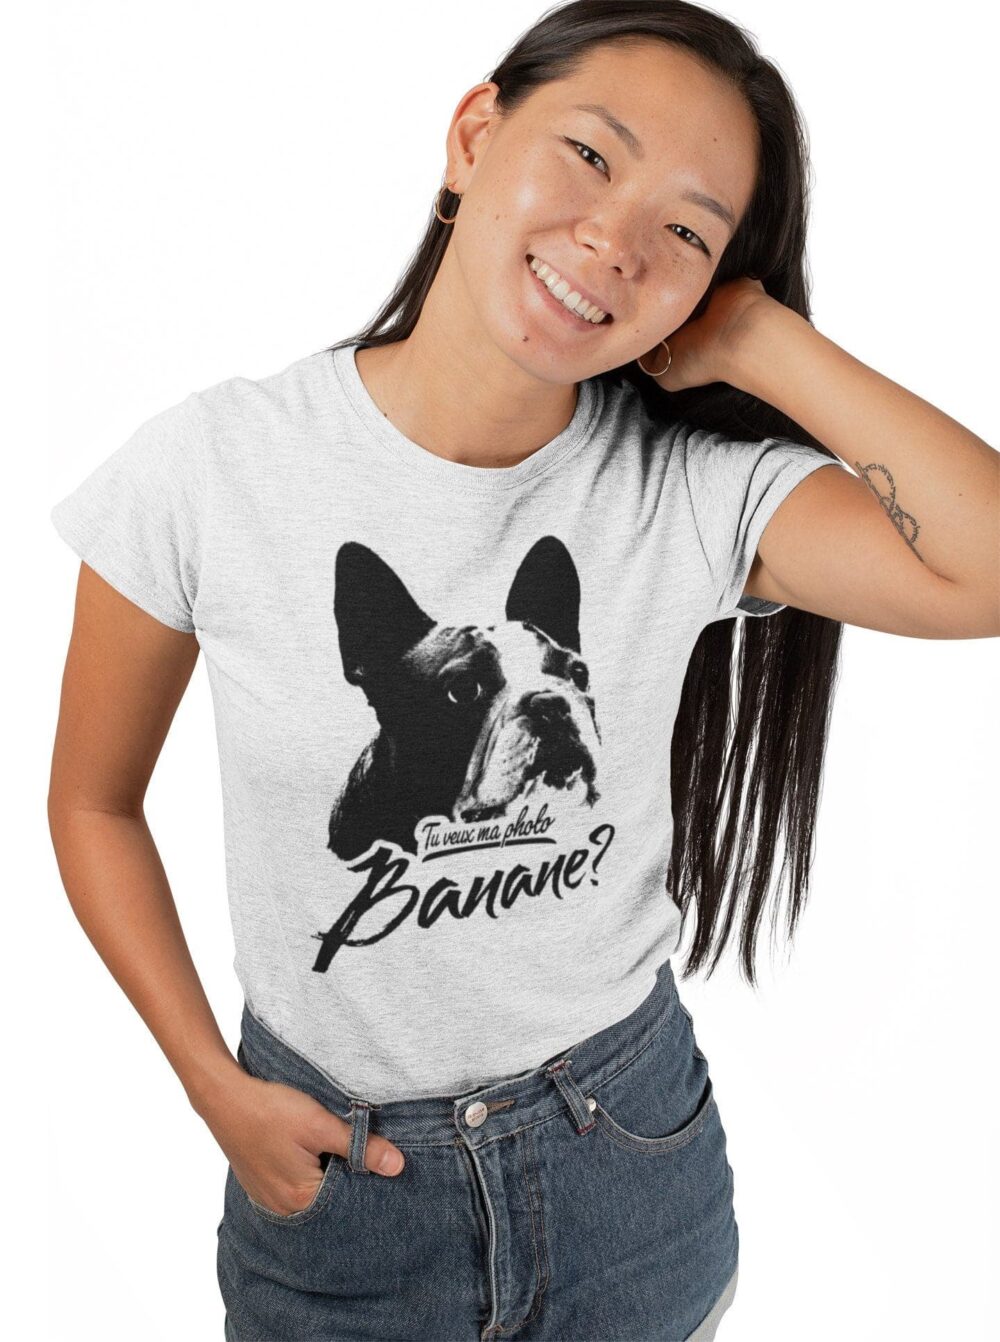 Tu veux ma photo BANANE tshirt pour femme t-shirt de chien Boston Bull 2